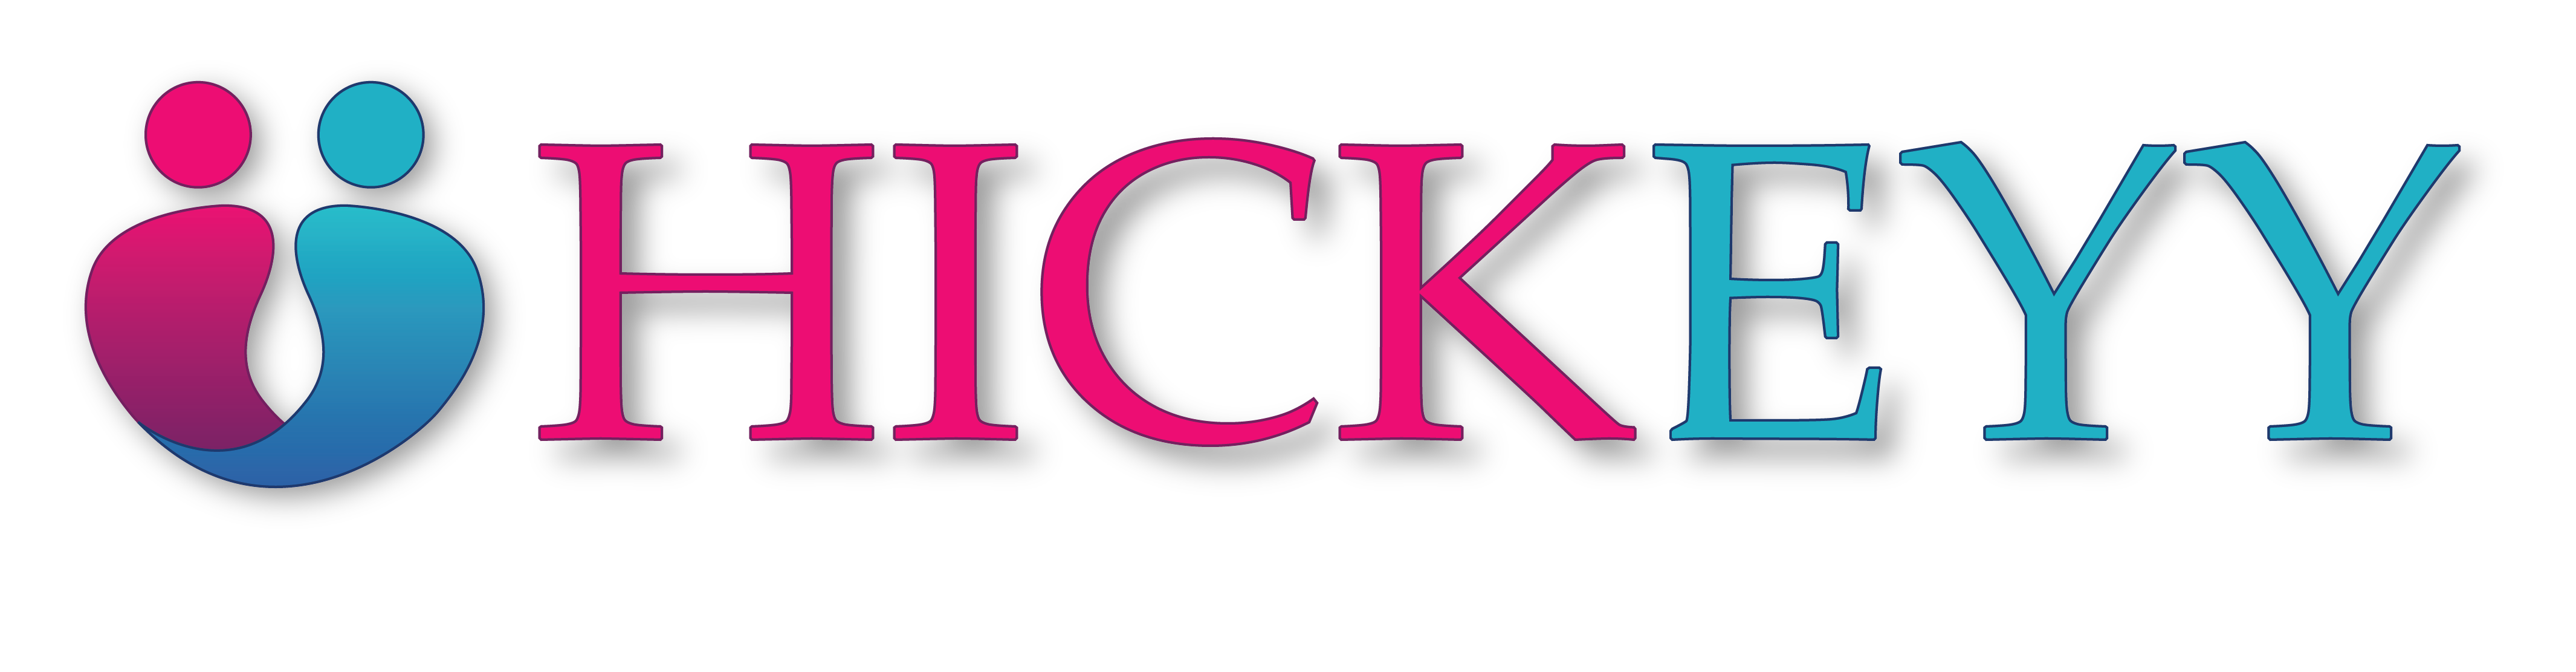 hickeyy logo